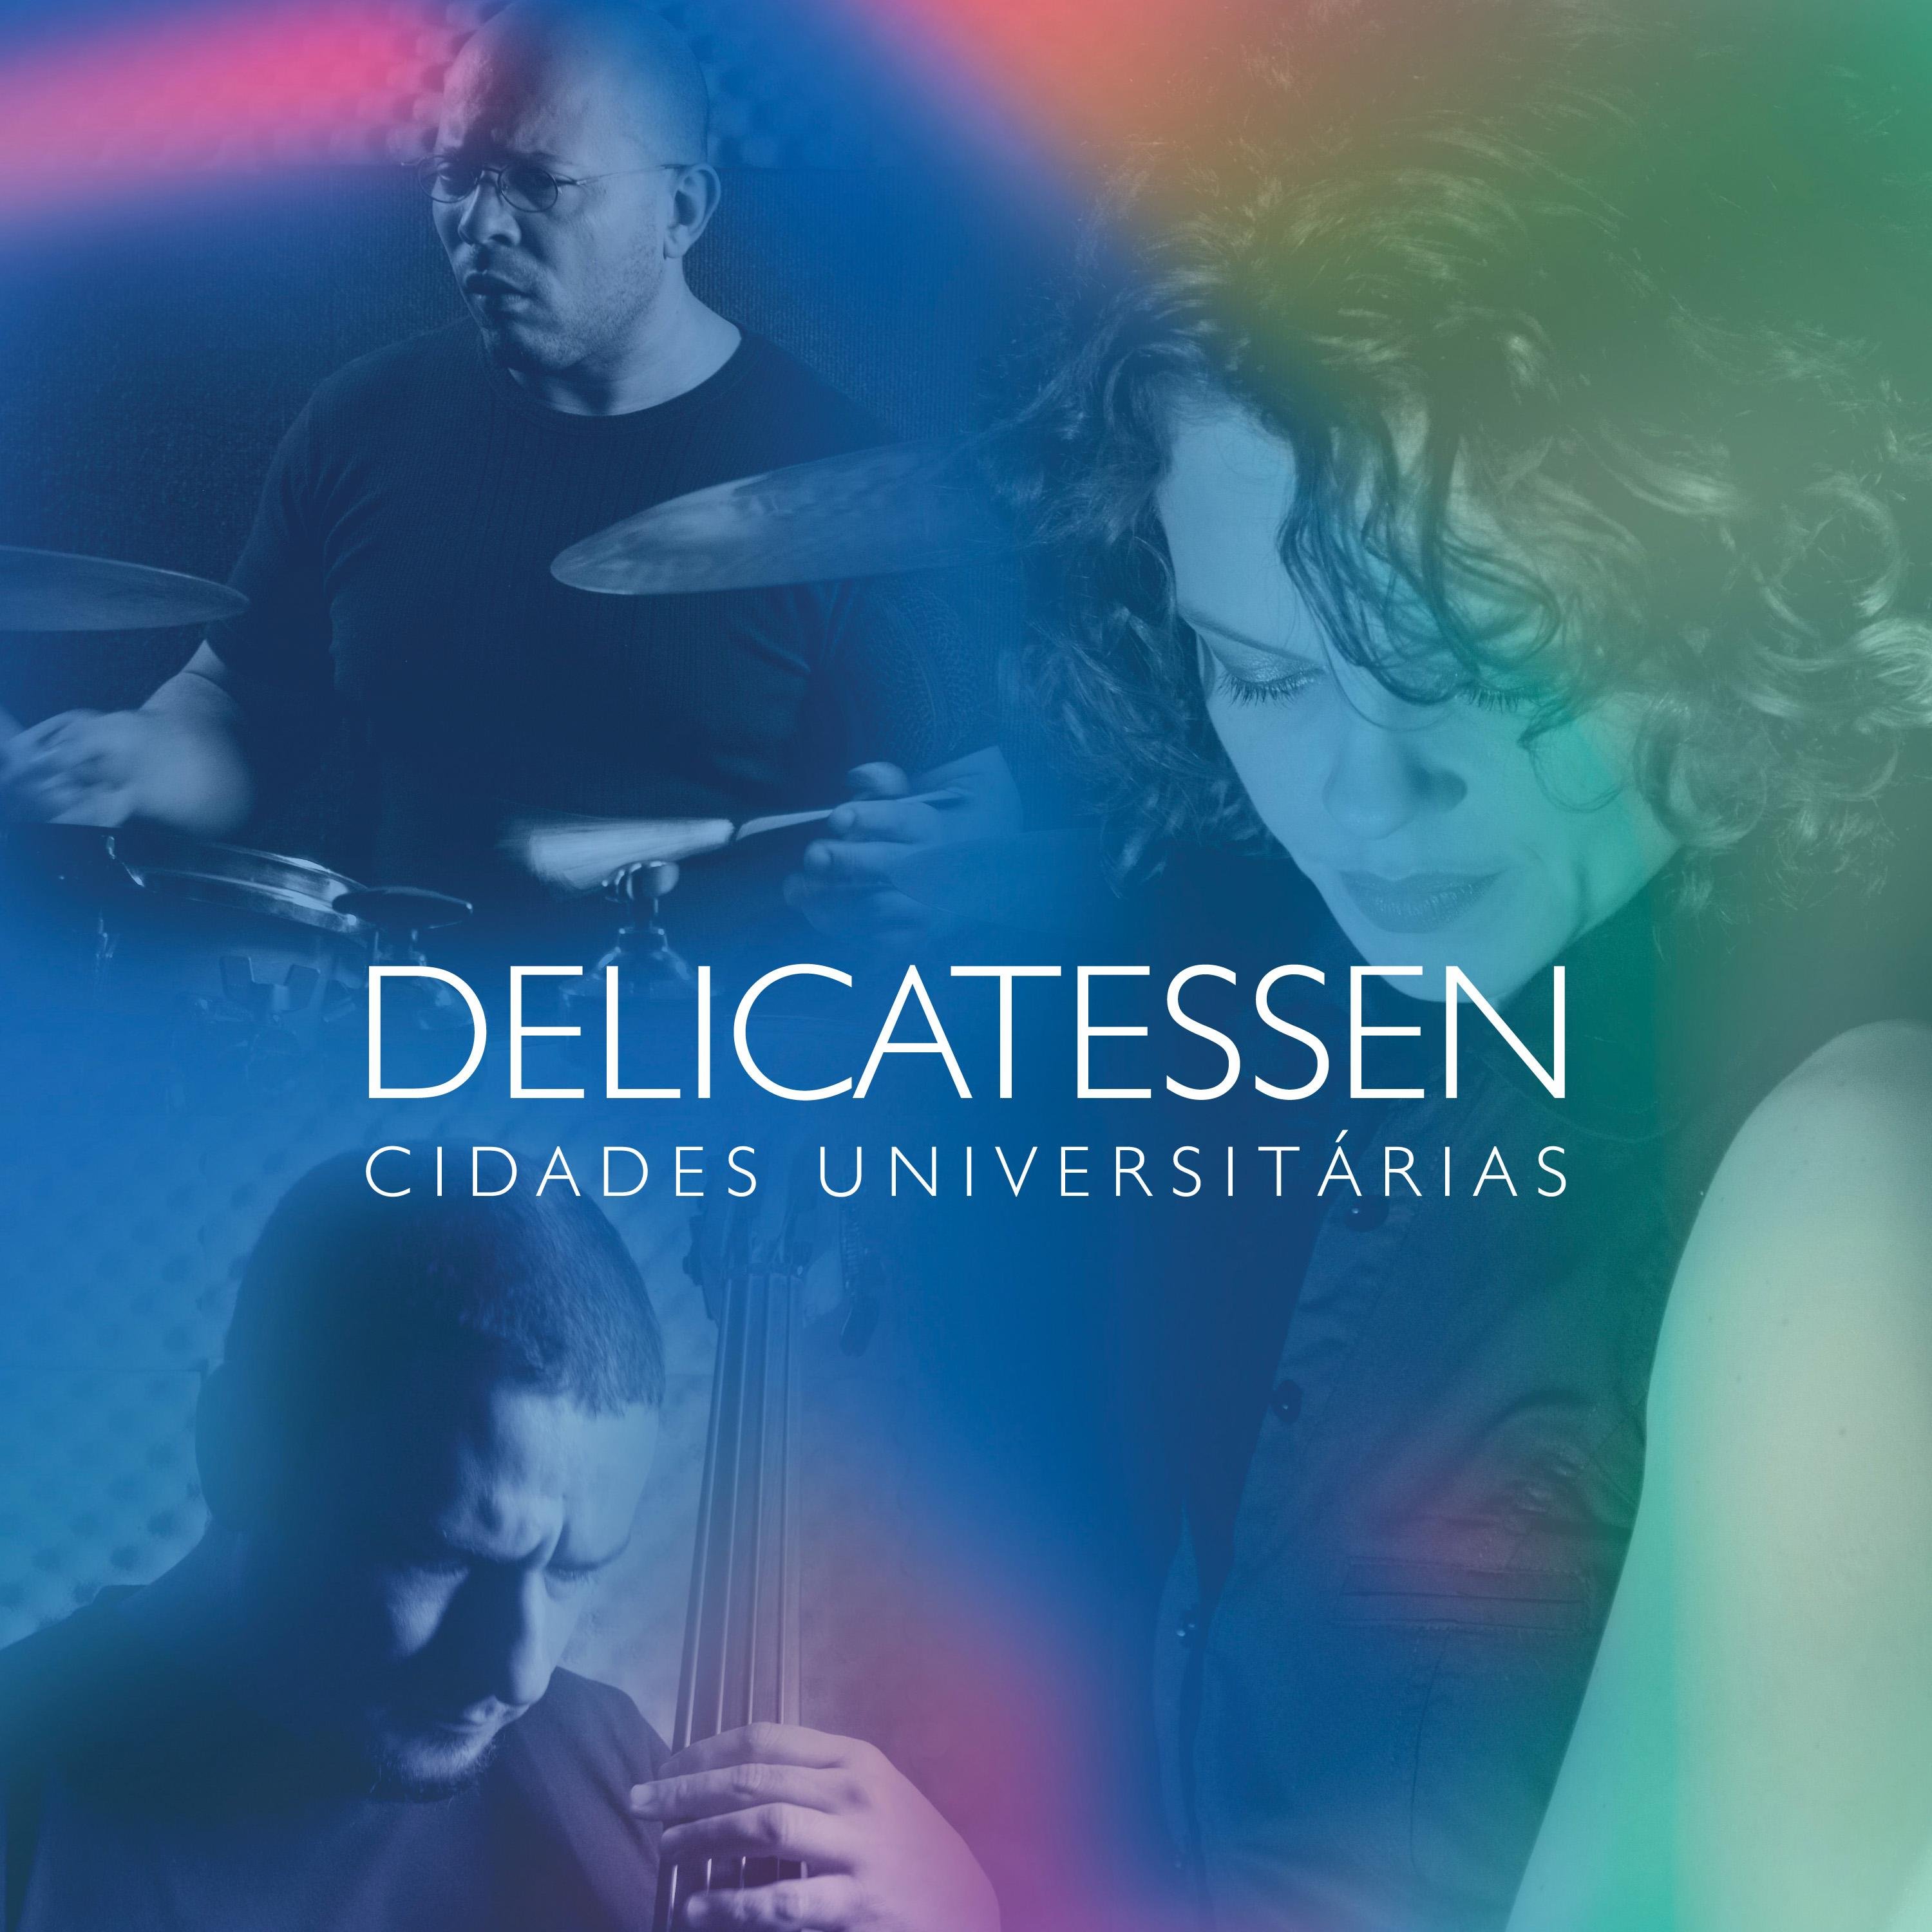 O grupo brasileiro de jazz e bossa nova Delicatessen é formado por Ana Krüger, Nico Bueno e Mano Gomes. O grupo está em turnê pelo Rio Grande do Sul.